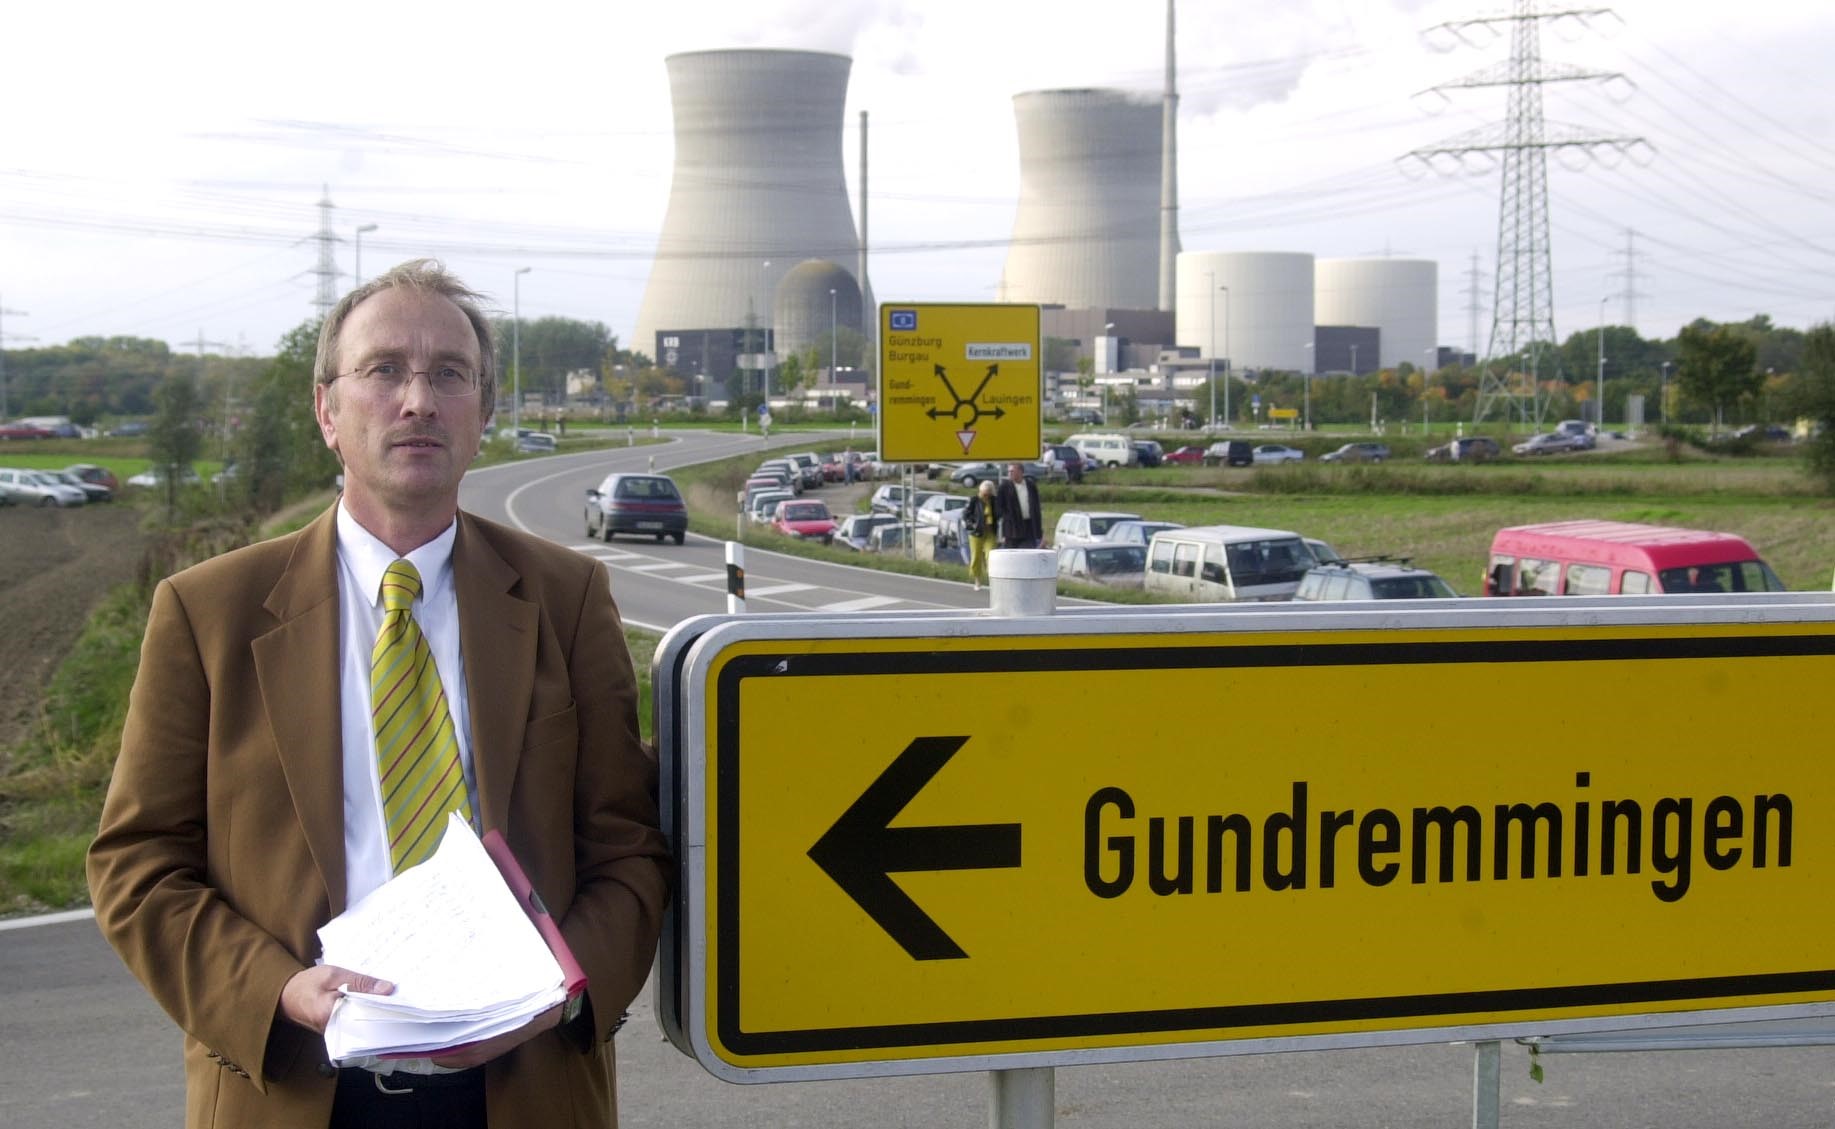 Ein  Mann steht vor Kühltürmen eines Atomkraftwerkes. Neben im steht das Ortsschild Grundremmngen